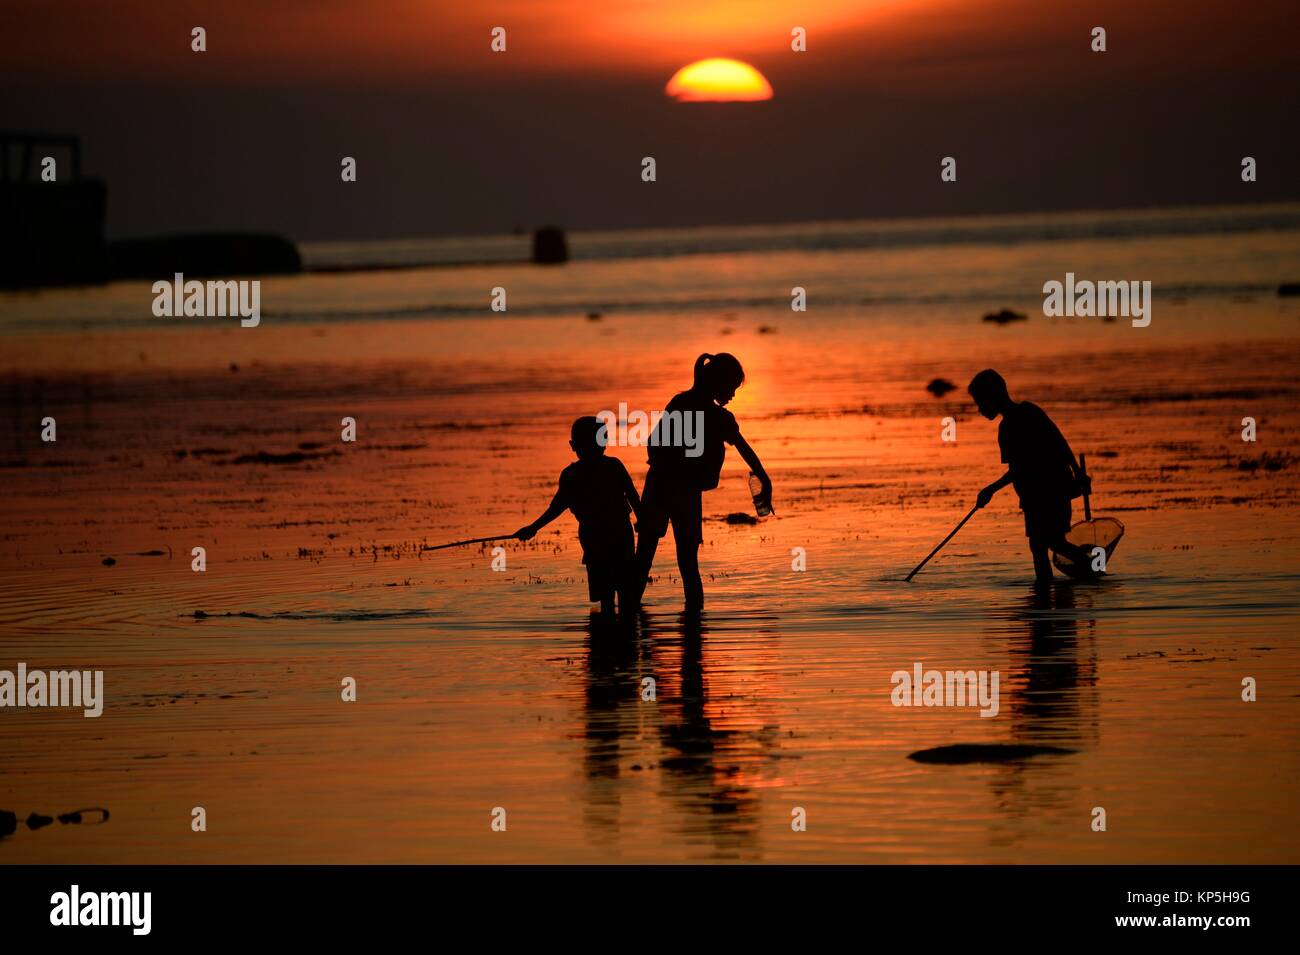 Silhouette of children fishing at sunset in Lovina Beach,Bali island,Indonesia. Stock Photo